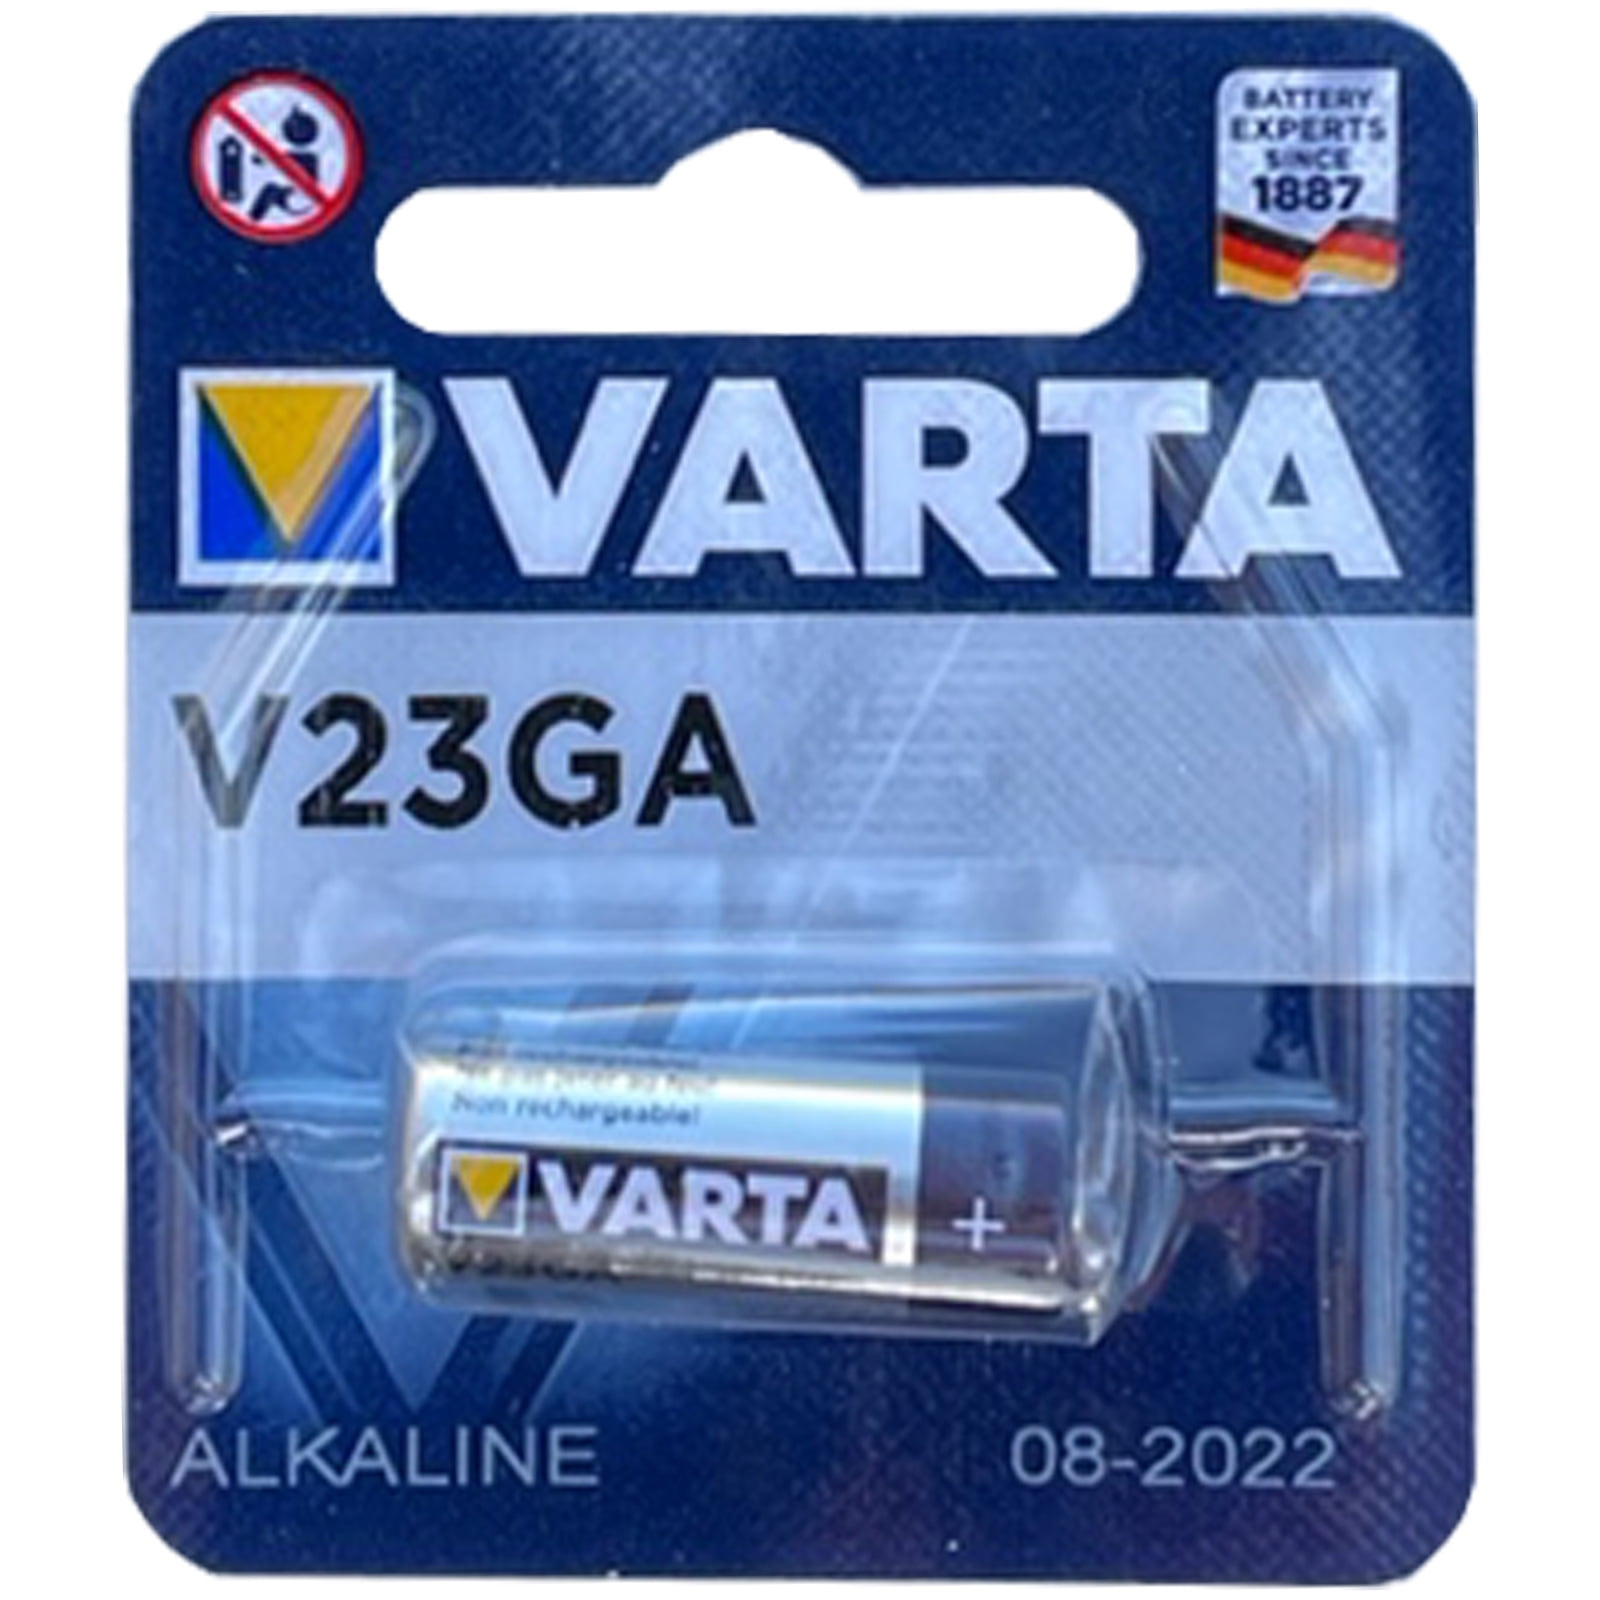 2 x Power One Varta Alkaline Batterie 12Volt A23 23A p23ga V23GA MN21 8LR932 